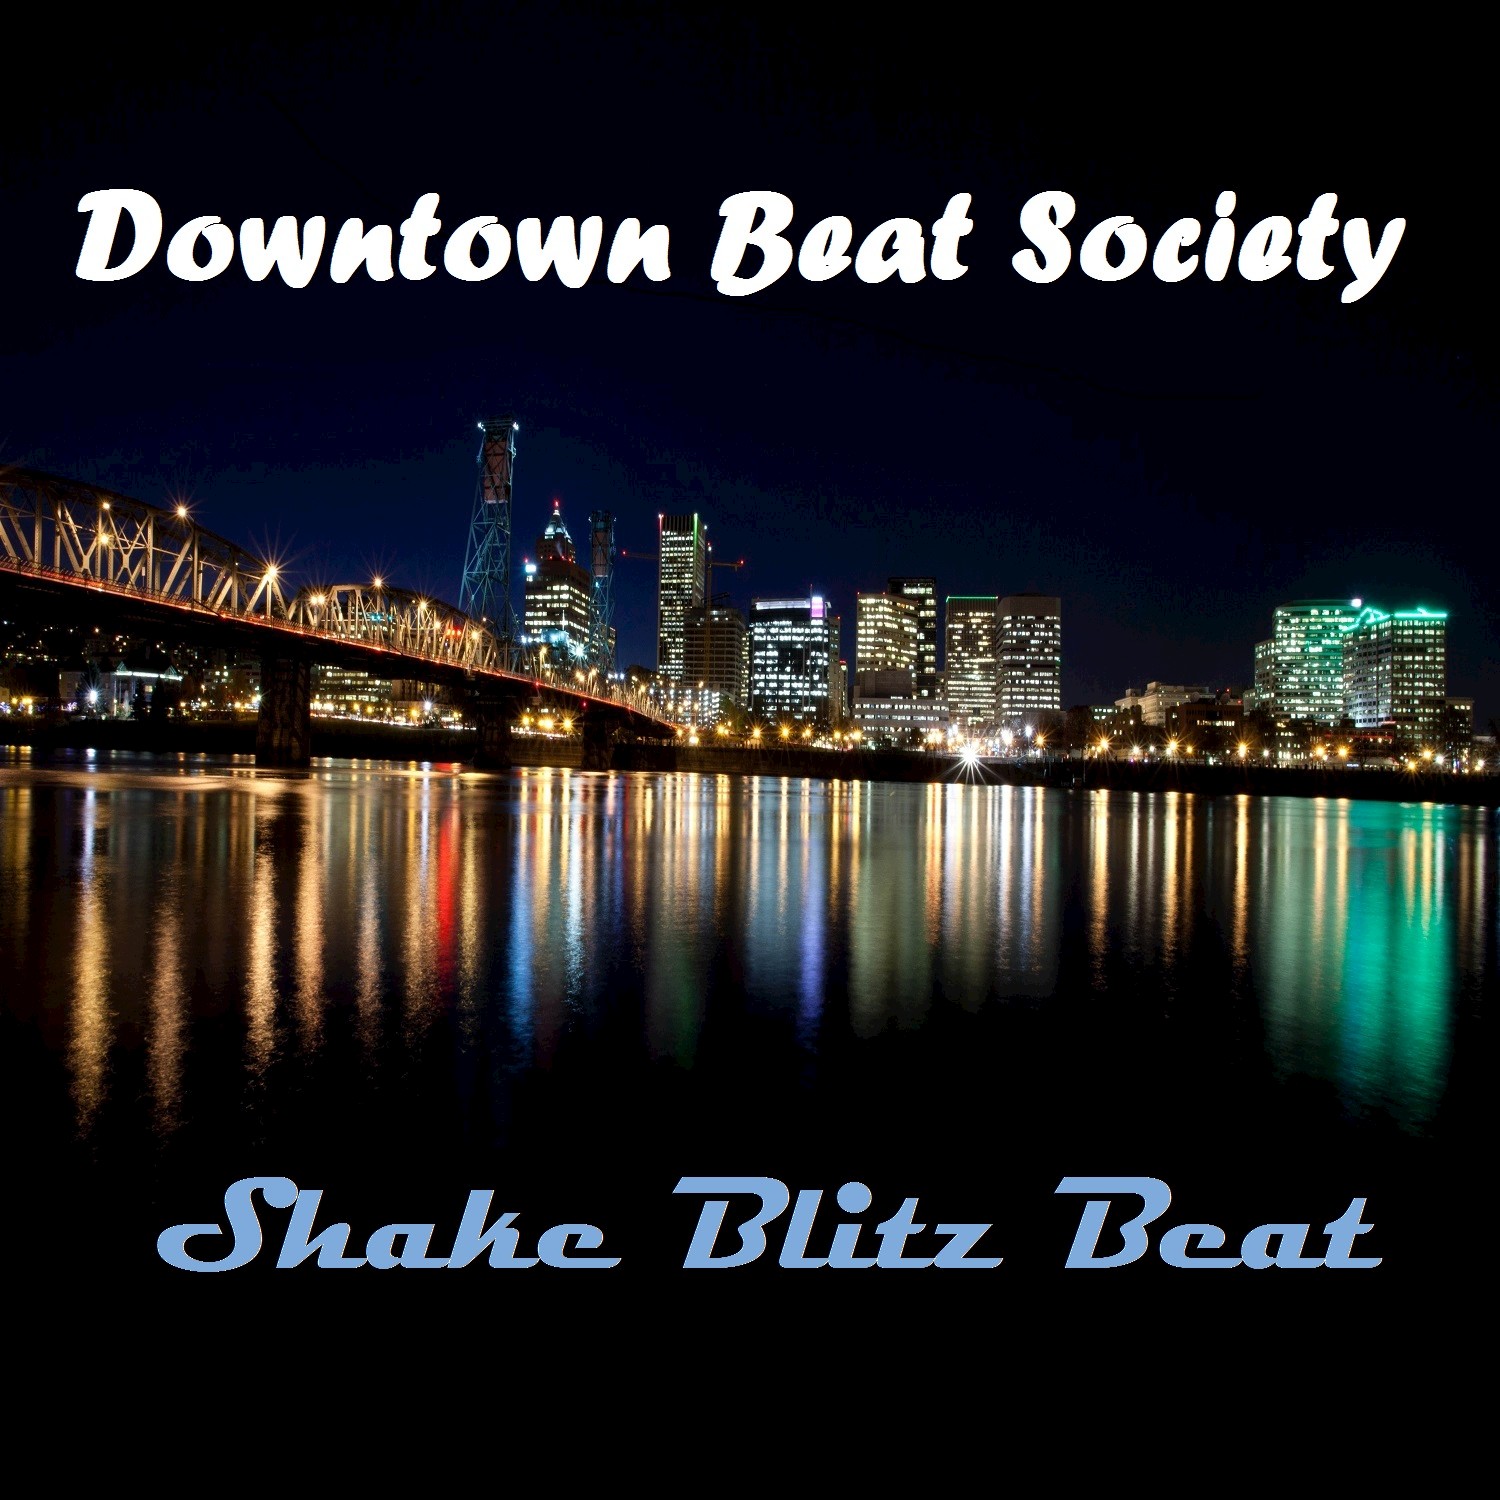 Shake Blitz Beat